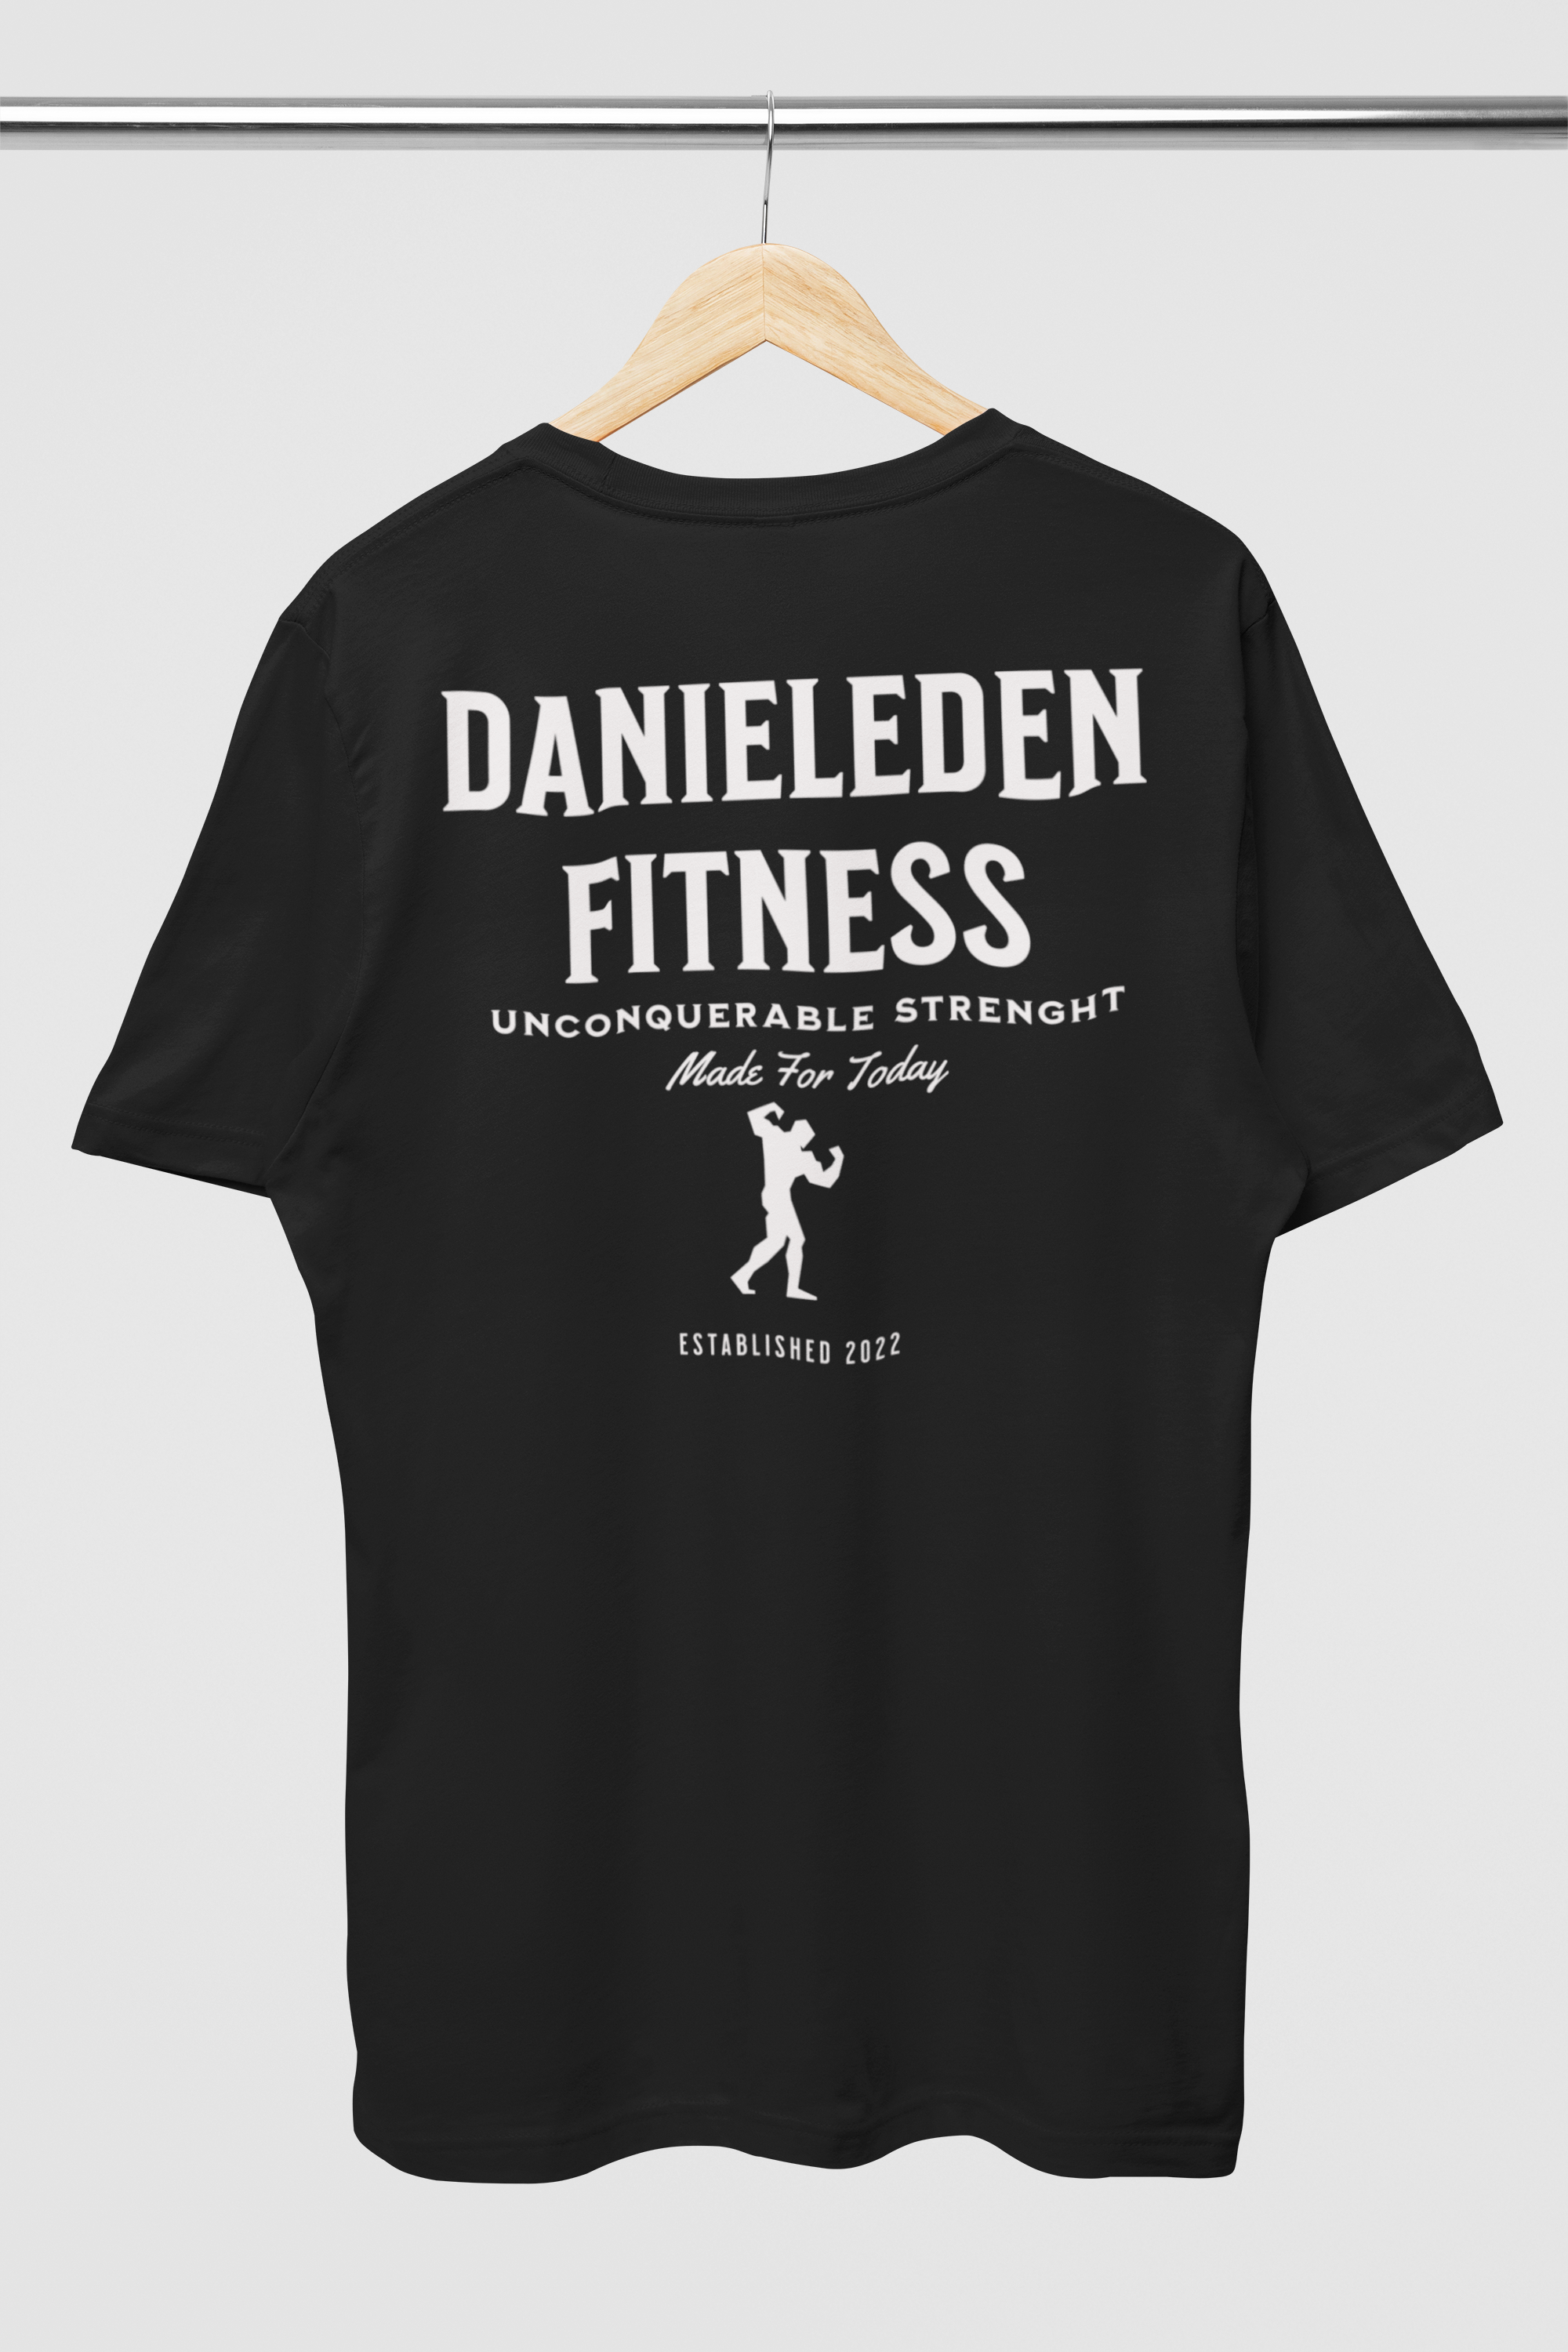 DanielEden " Strenght "